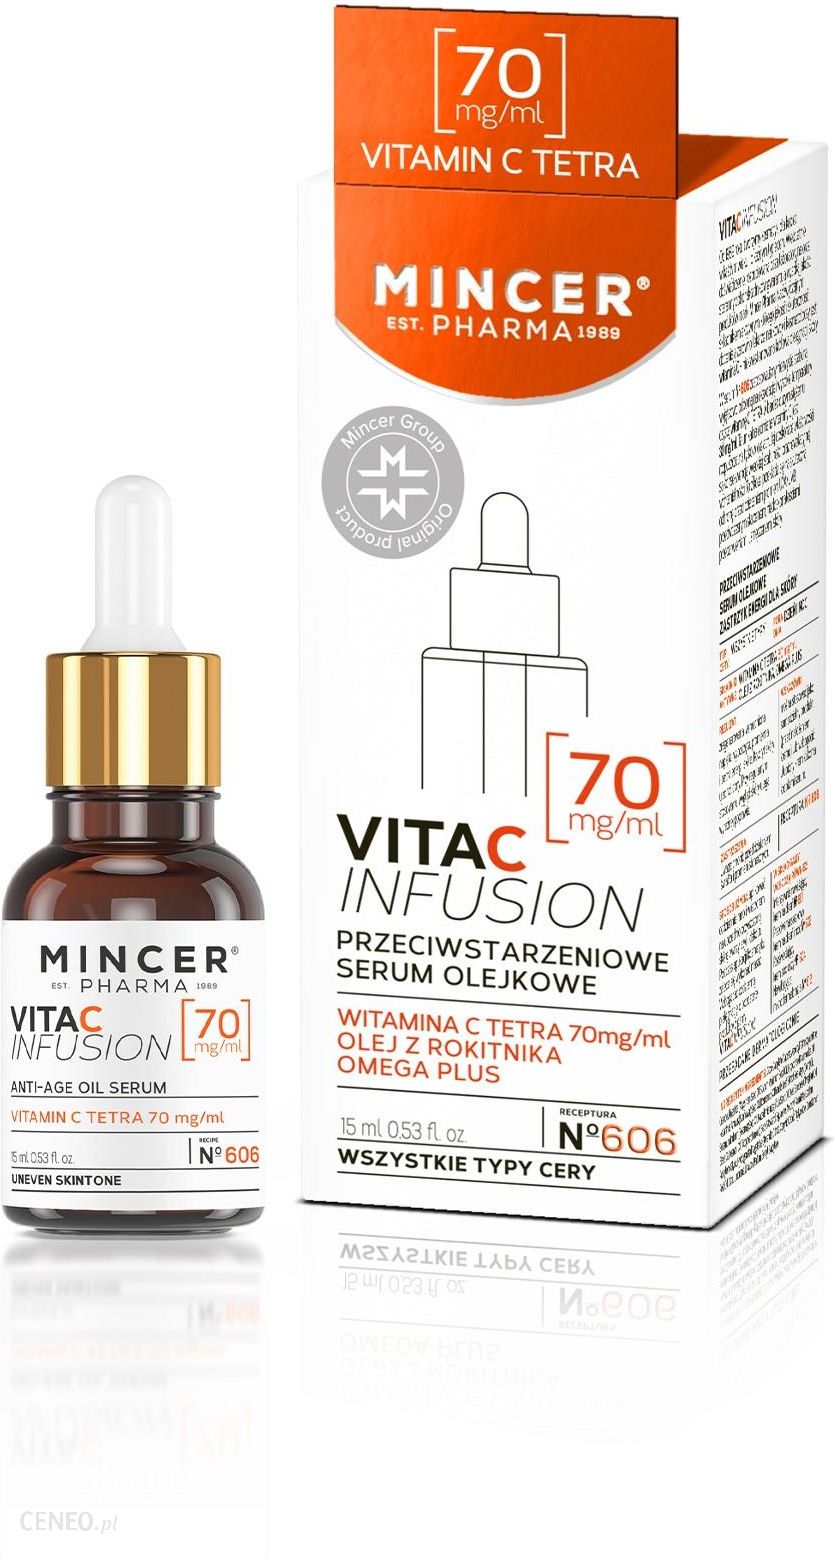 Mincer Pharma Vita C Infusion Serum Olejkowe Przeciwstarzeniowe 15ml